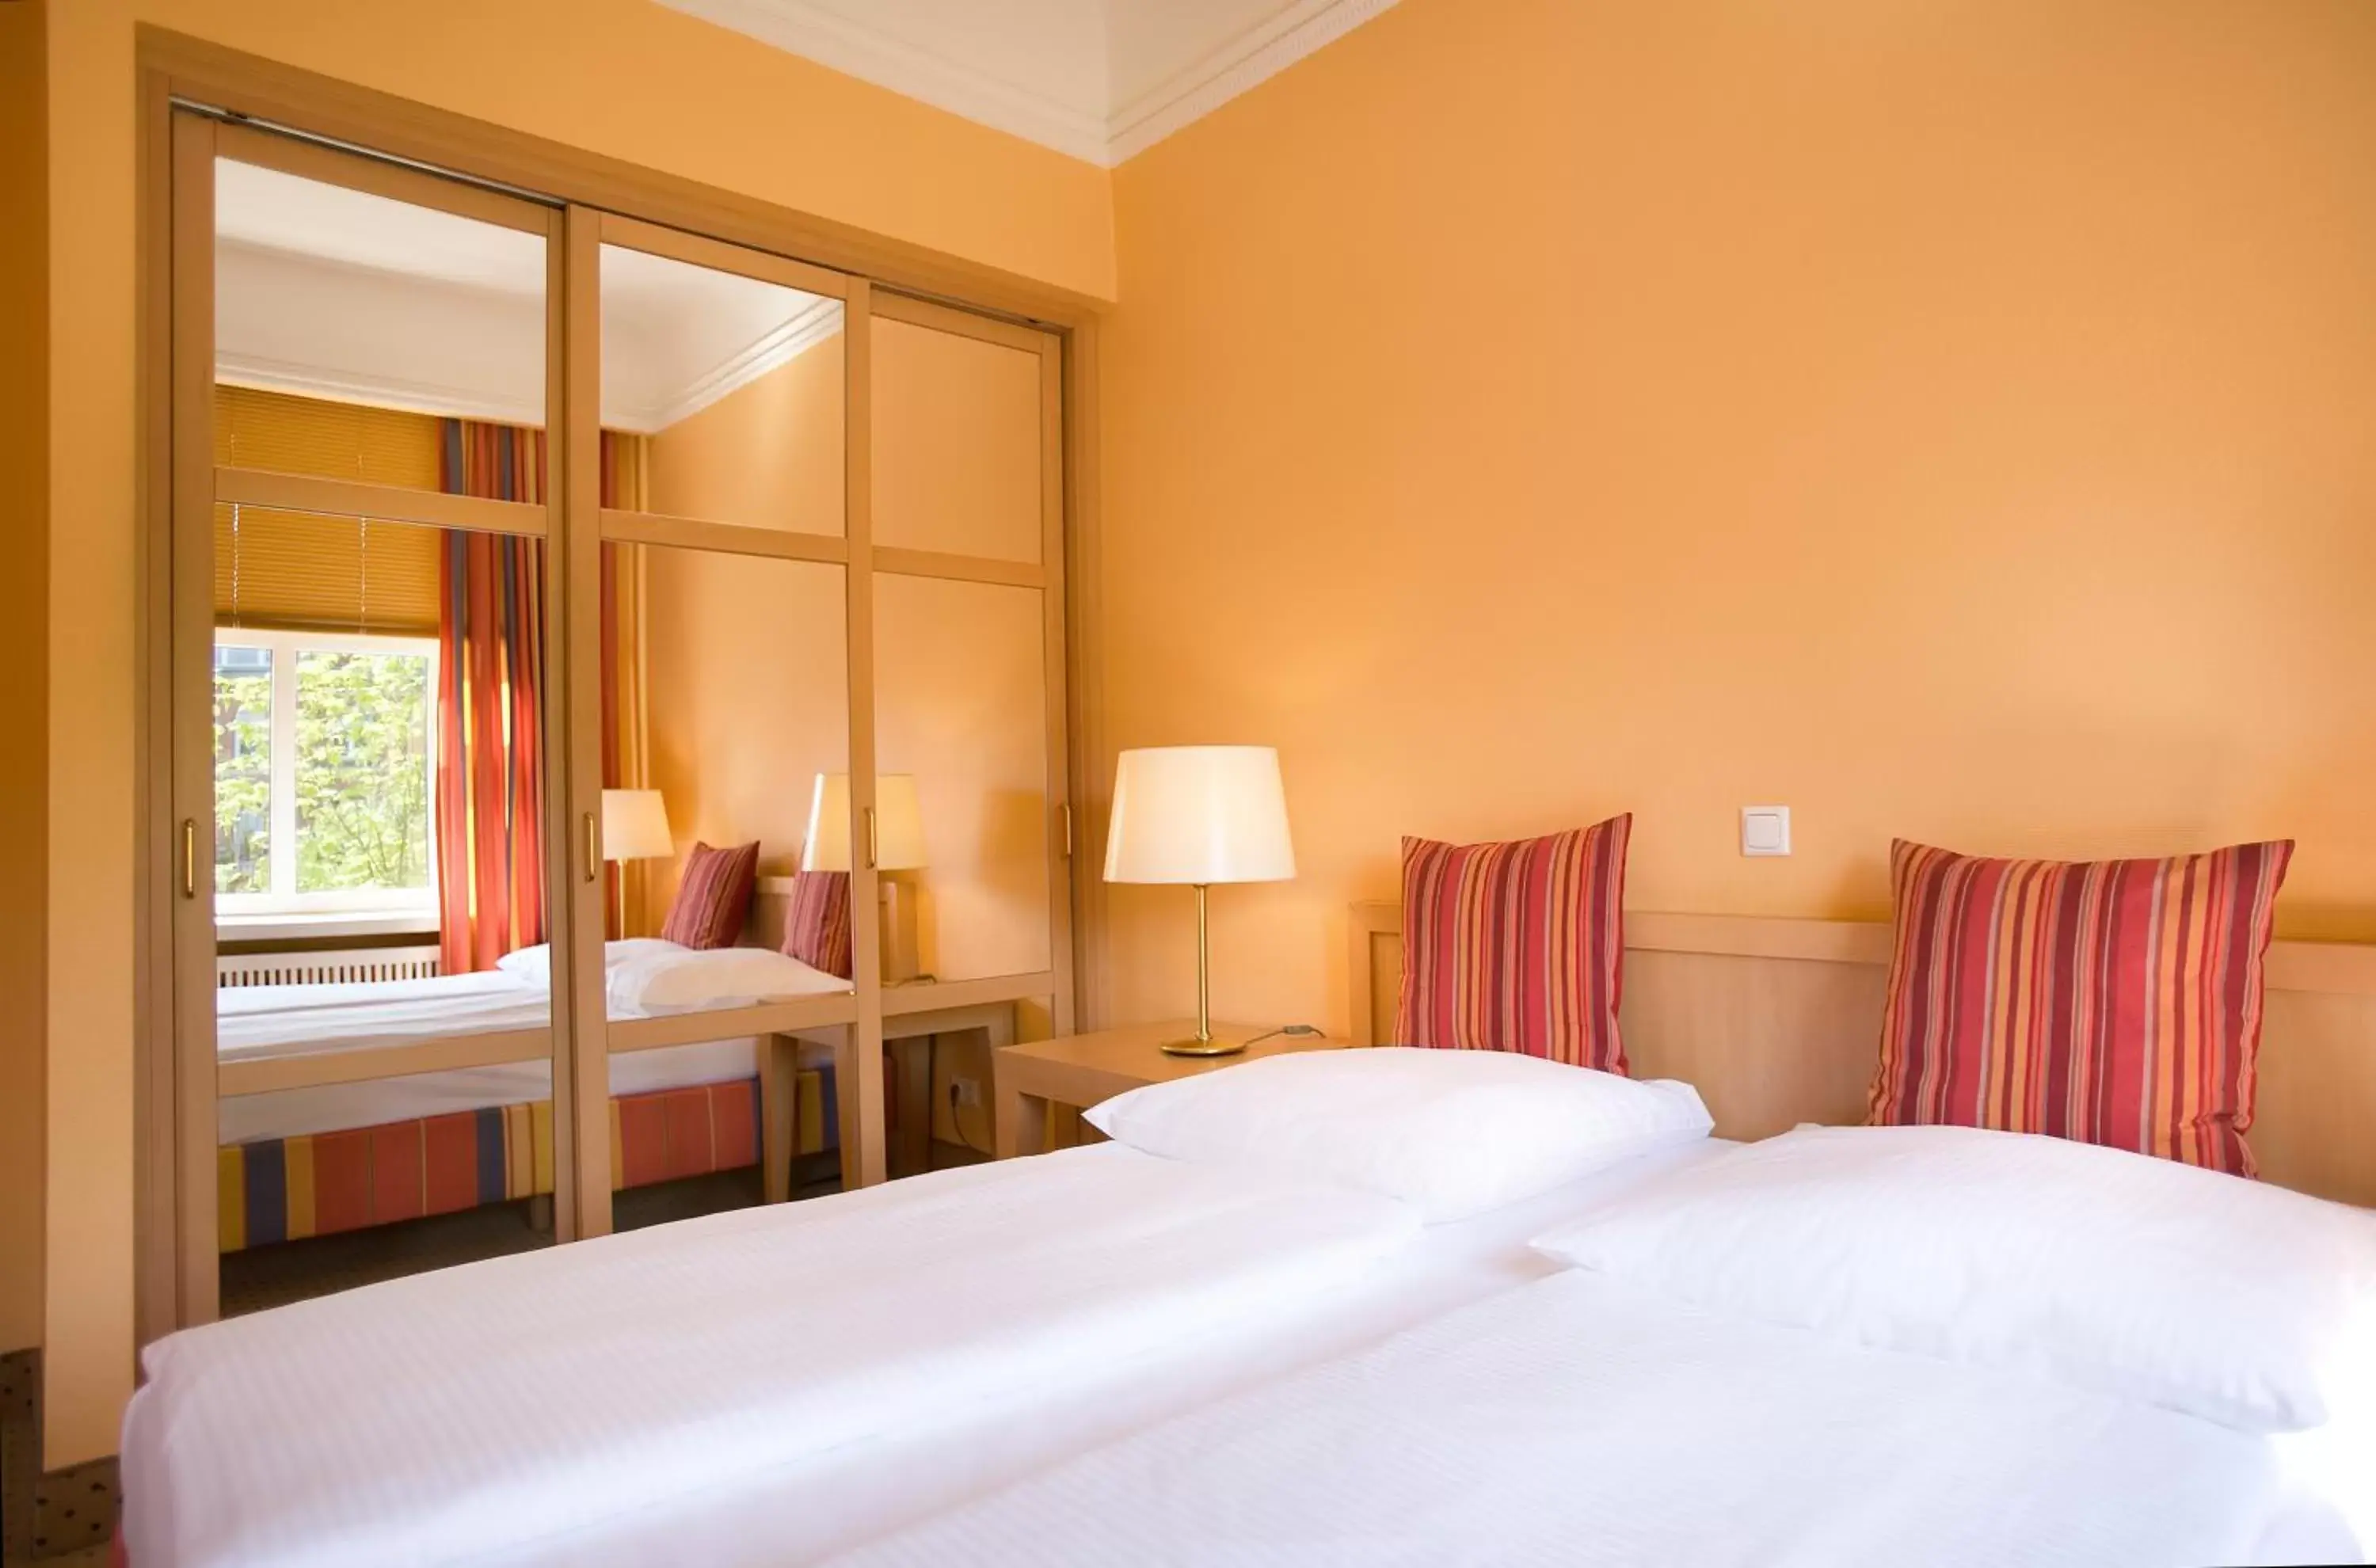 Premium Double or Twin Room in Relexa Hotel Bellevue an der Alster